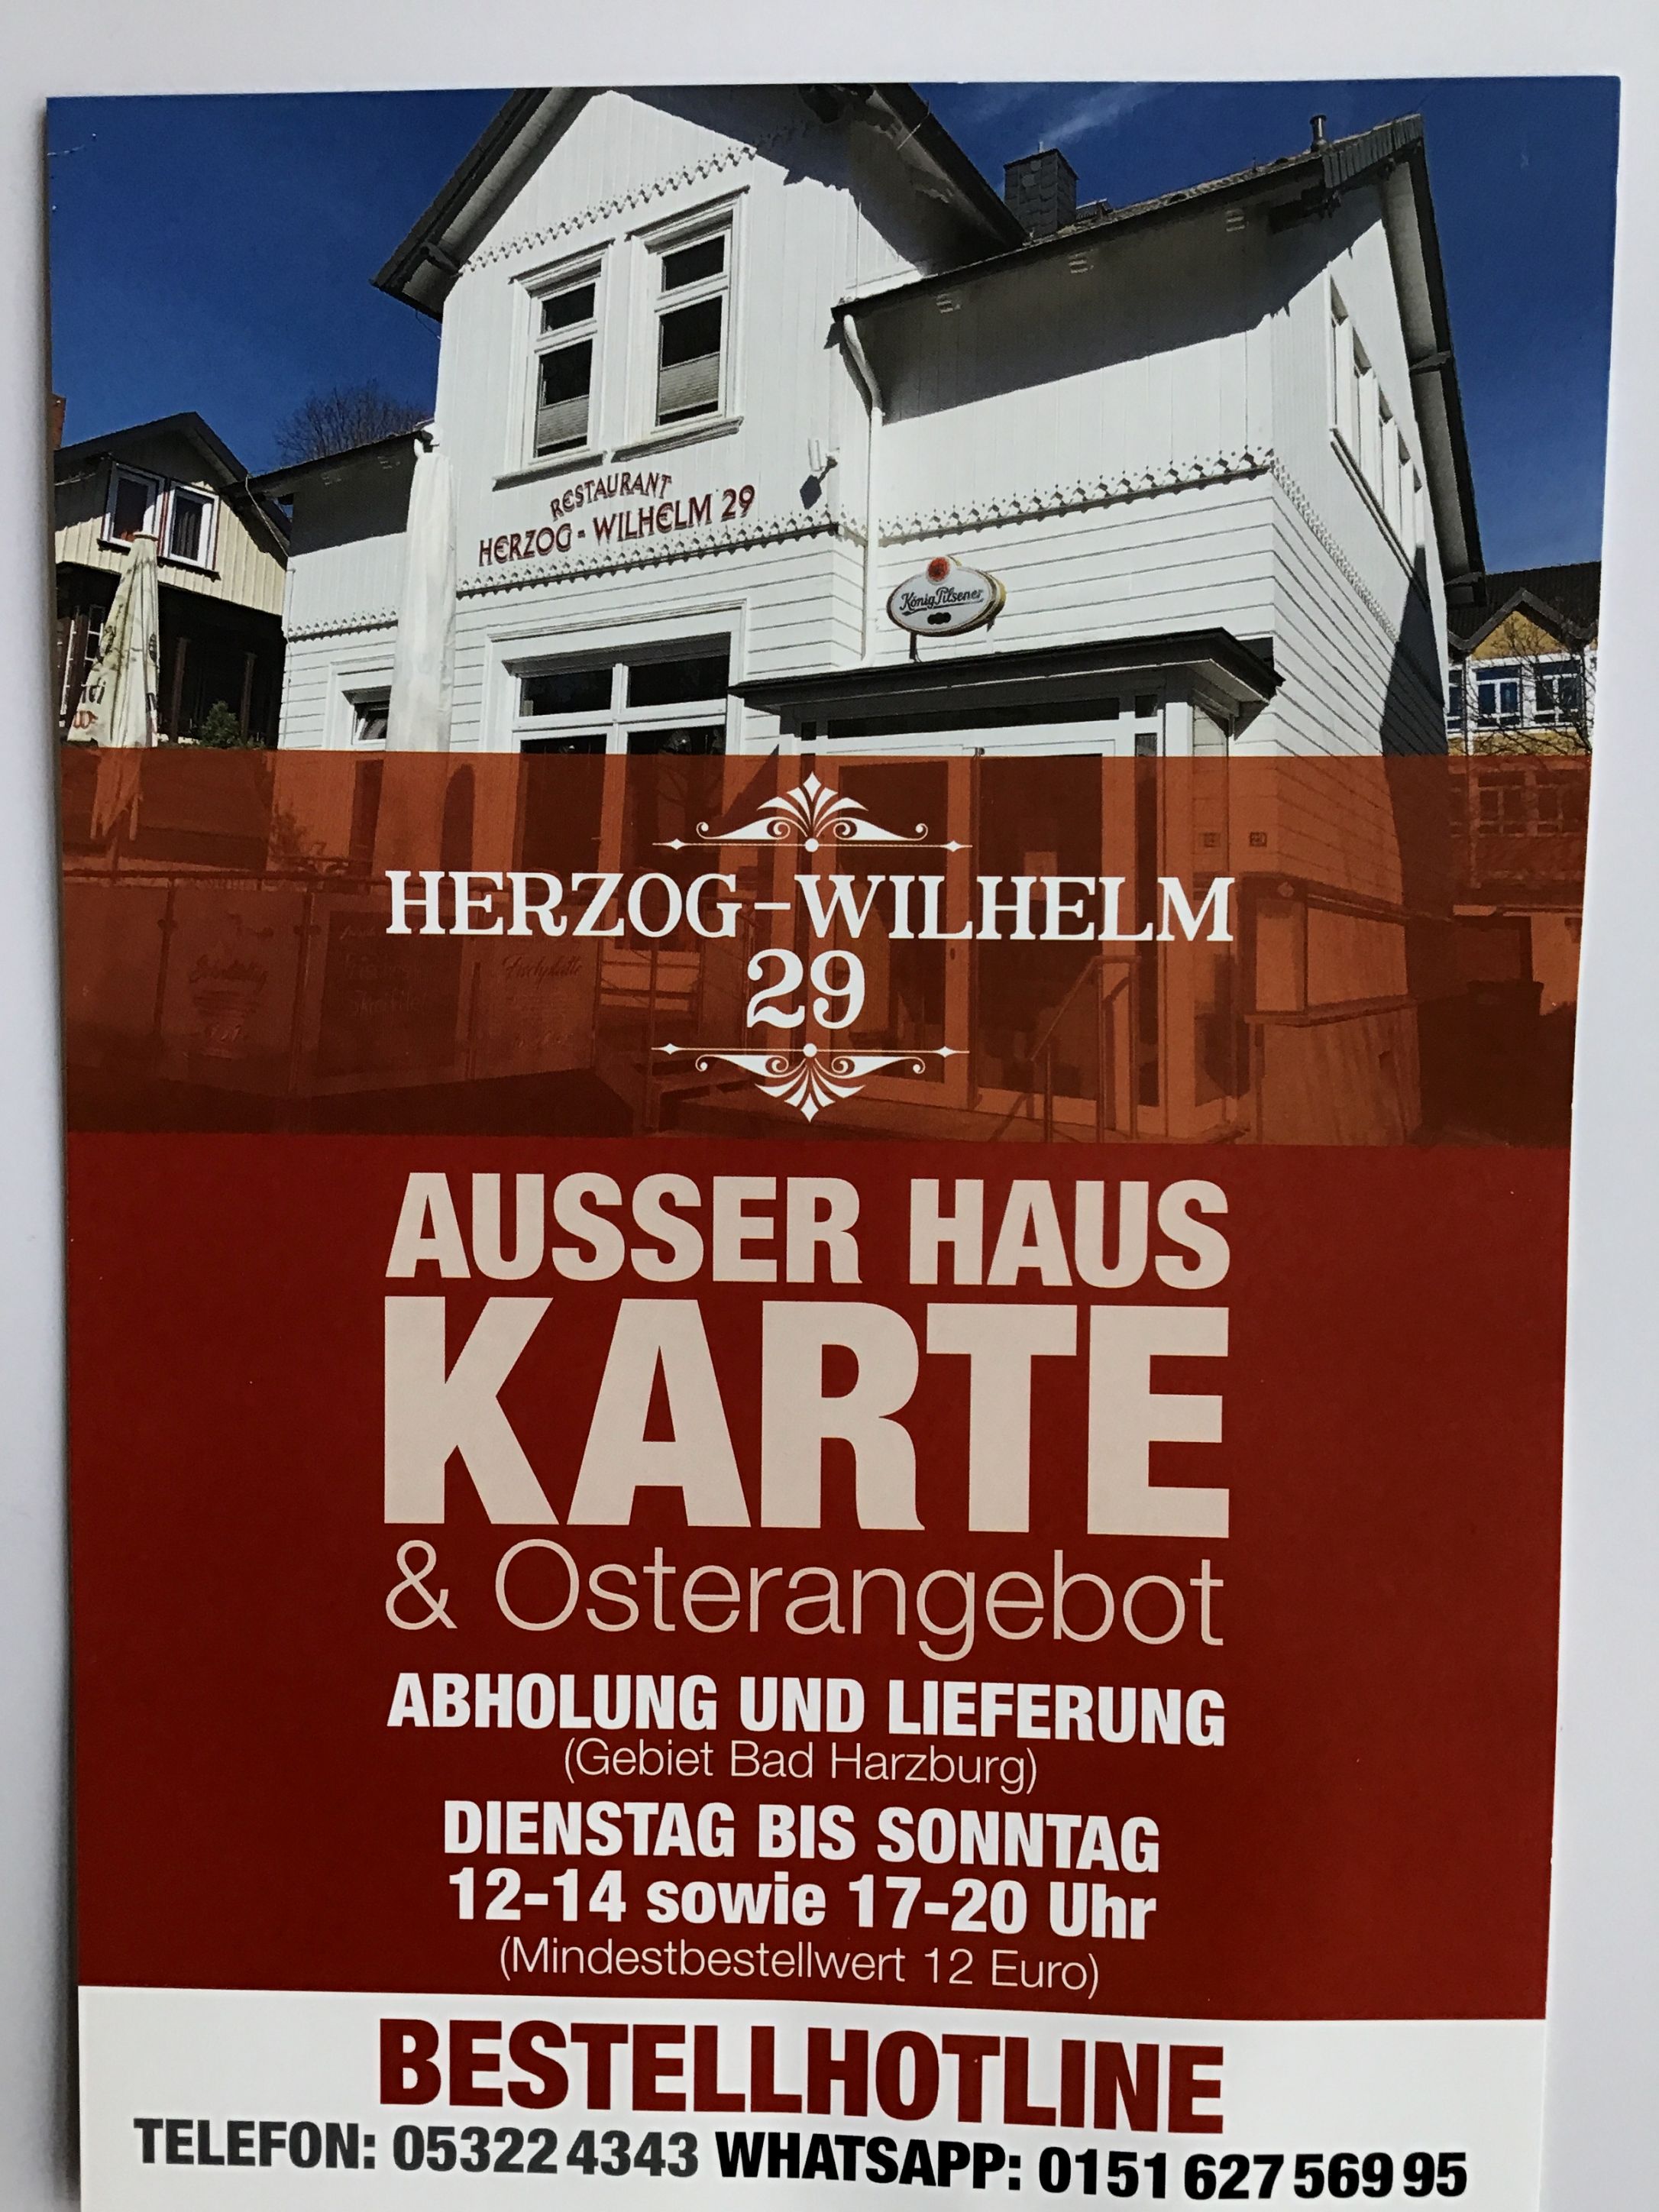 Restaurant Herzog-Wilhelm 29